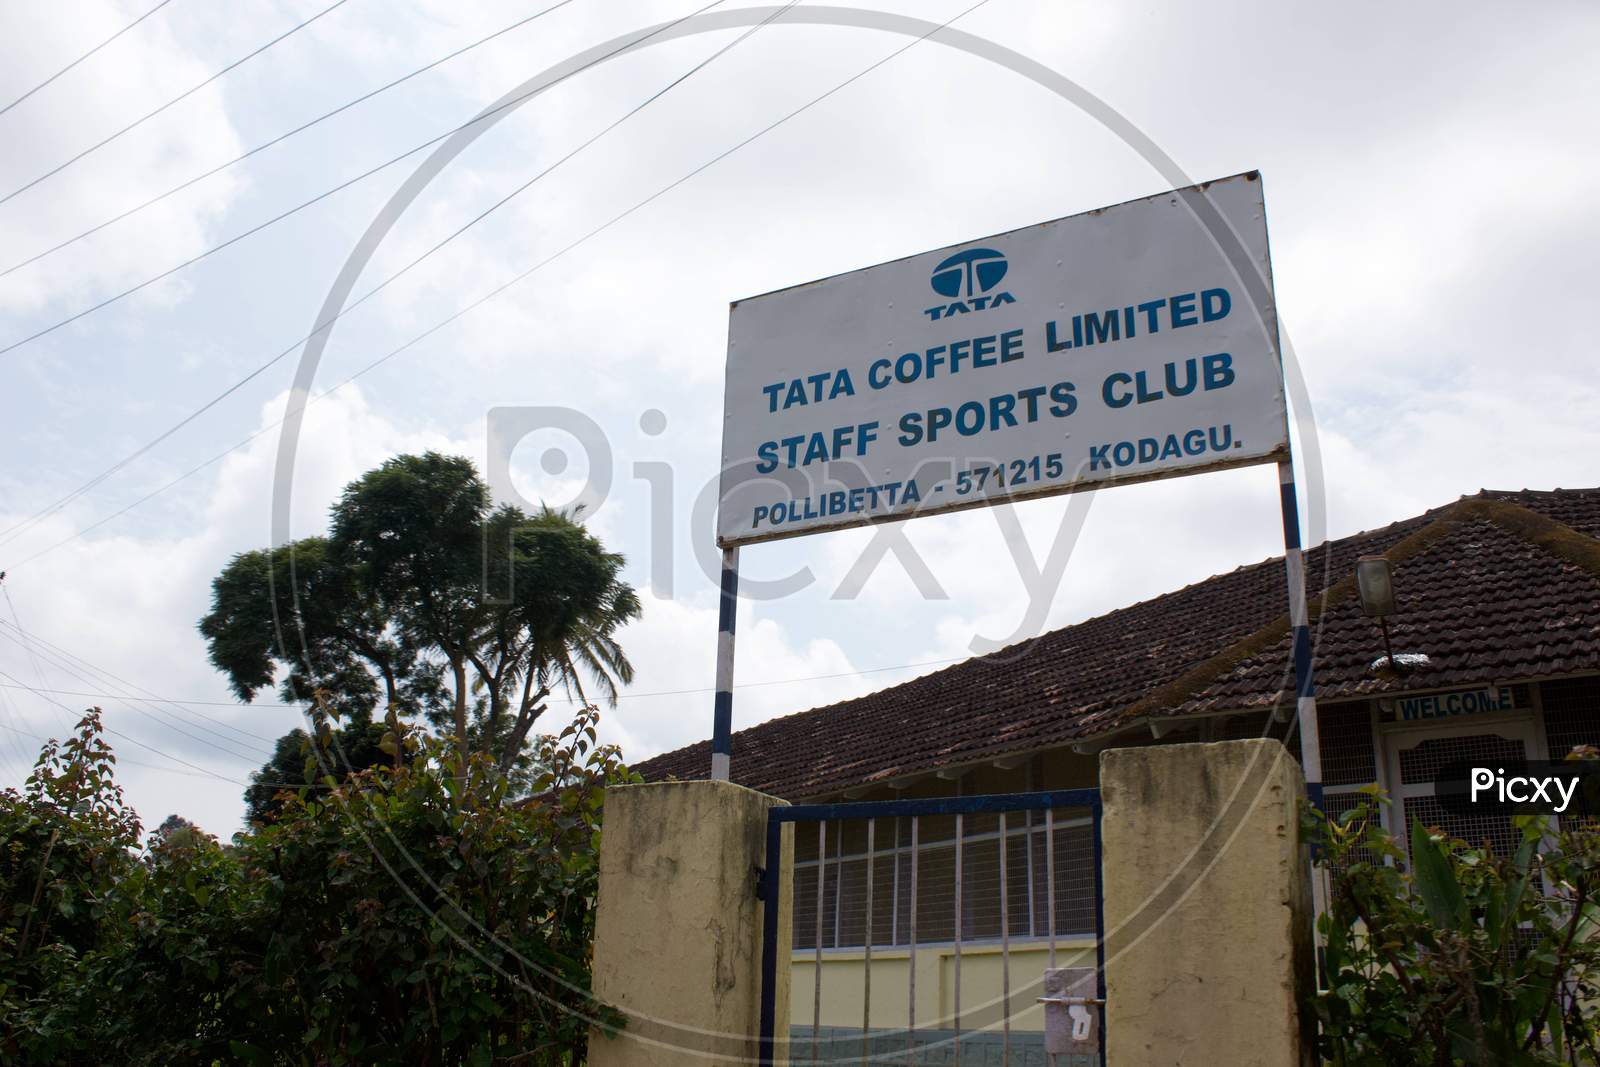 Tata coffee staff sports club